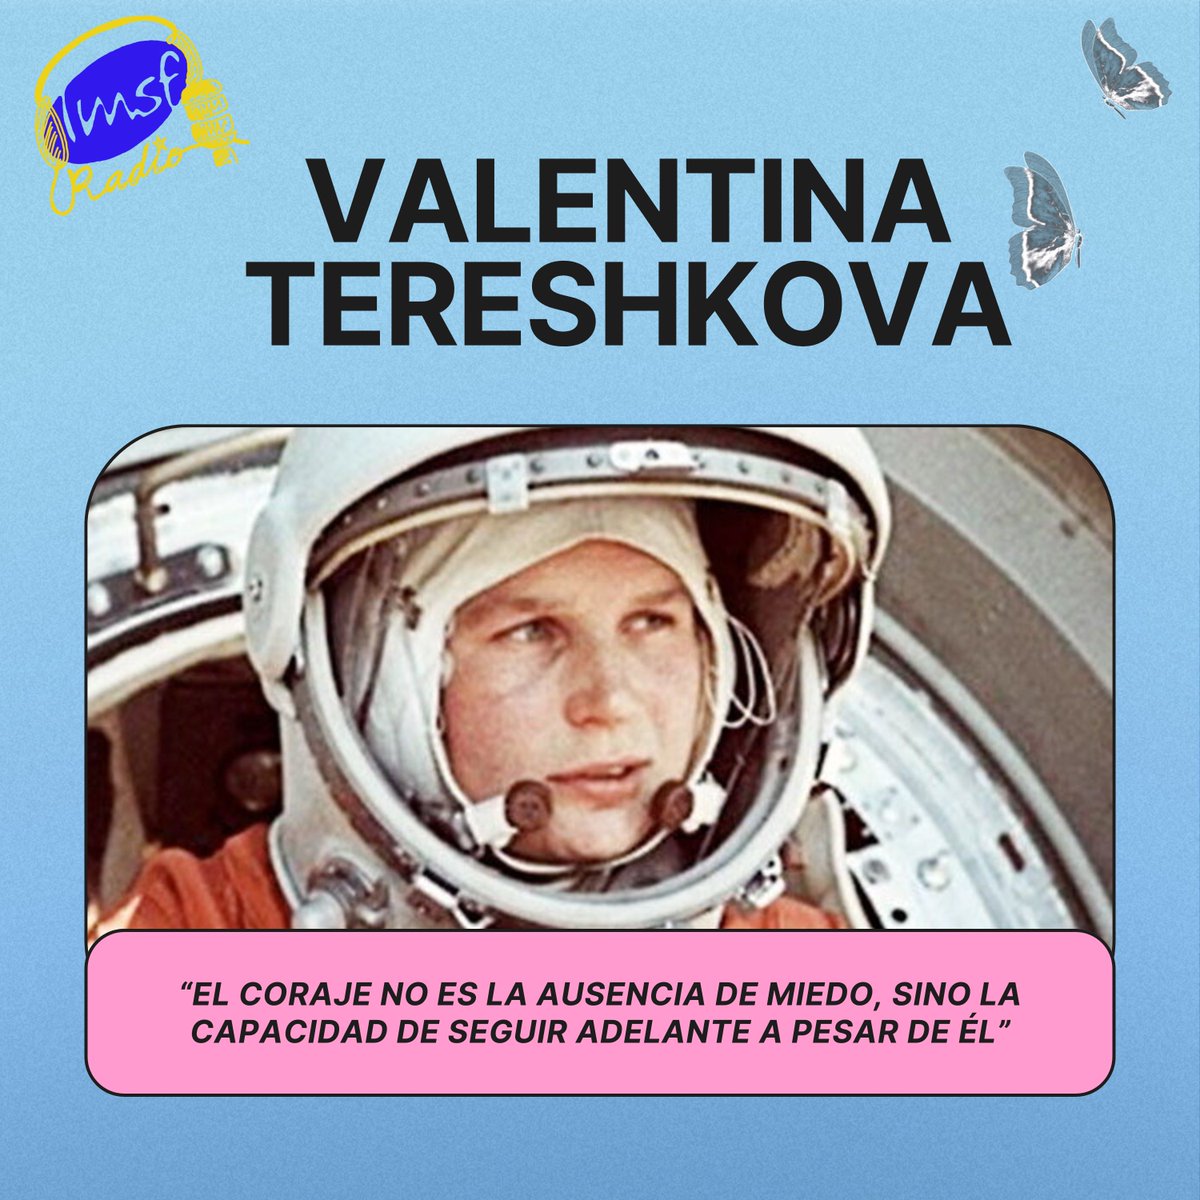 Escucha la ficción sonora sobre Valentina Tereshkova en el siguiente enlace y sigue nuestro programa 'Imperfectas', basado en el libro de #VioletaMonreal. go.ivoox.com/rf/128170567 #OlimpiadadeTalentODS #Imperfectas #RadioLMSF #RadioEscolar #MujeresPioneras #ValentinaTereshkova